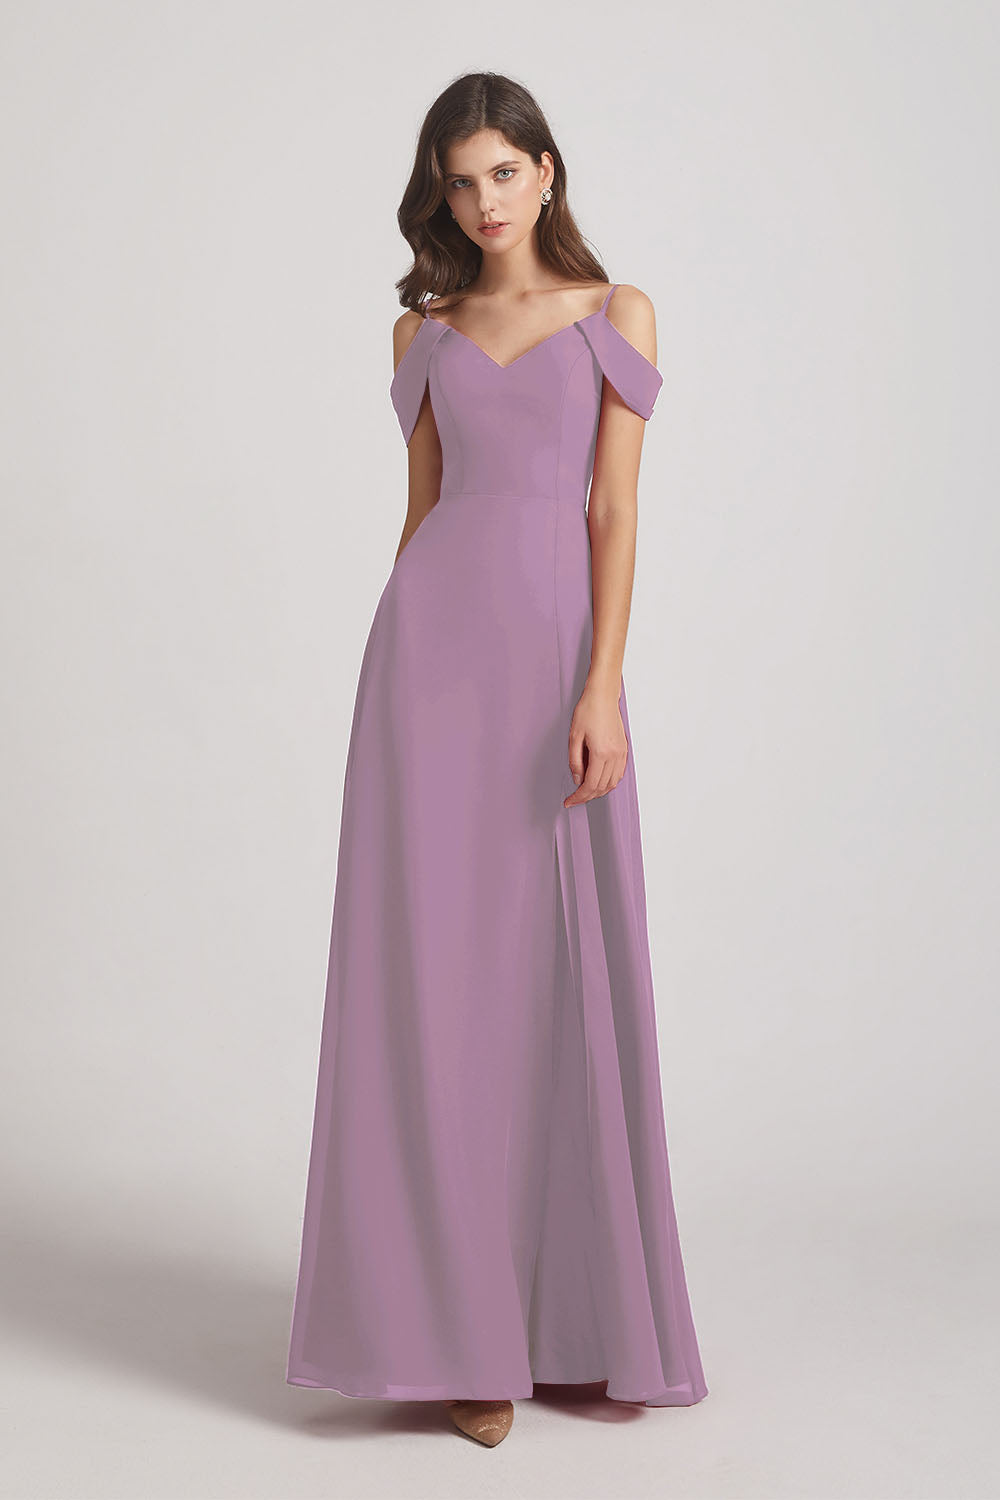 Alfa Bridal Dark Lavender Chiffon Cold Shoulder V-Neck Bridesmaid Dresses with Slit (AF0093)